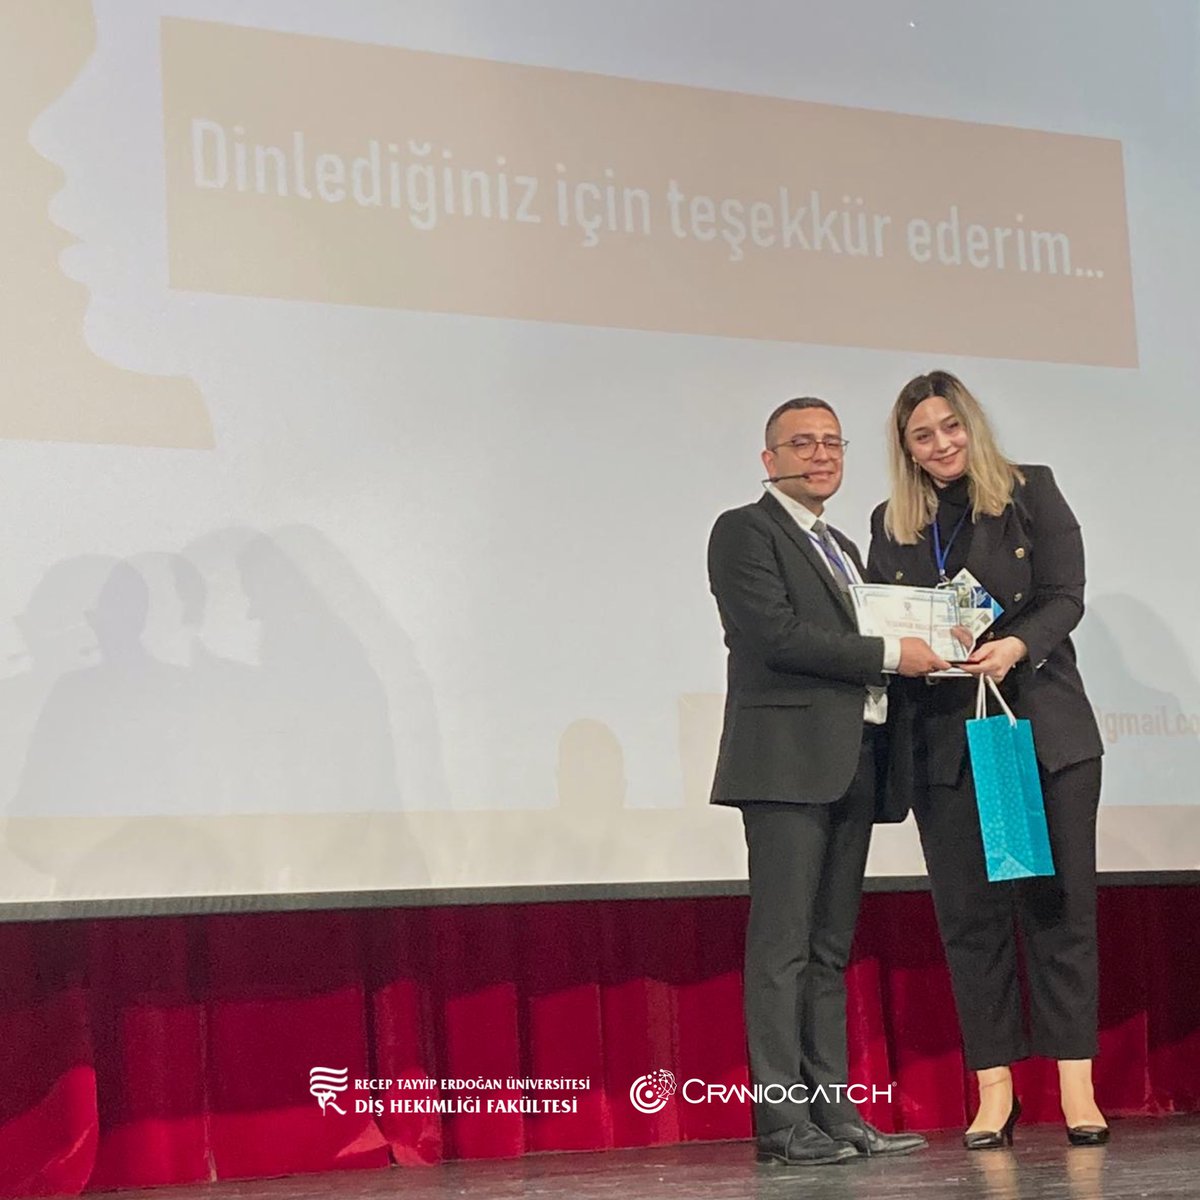 CEO'muz Doç. Dr. İbrahim Şevki Bayrakdar, Recep Tayyip Erdoğan Üniversitesi'nde gerçekleşen 2. Ulusal Diş Hekimliği Kongresi'nde “Dijital Dönüşüm ve Yapay Zeka” konularında önemli bir sunum gerçekleştirdi. 
O anlardan bir kaç kare!
#CranioCatch